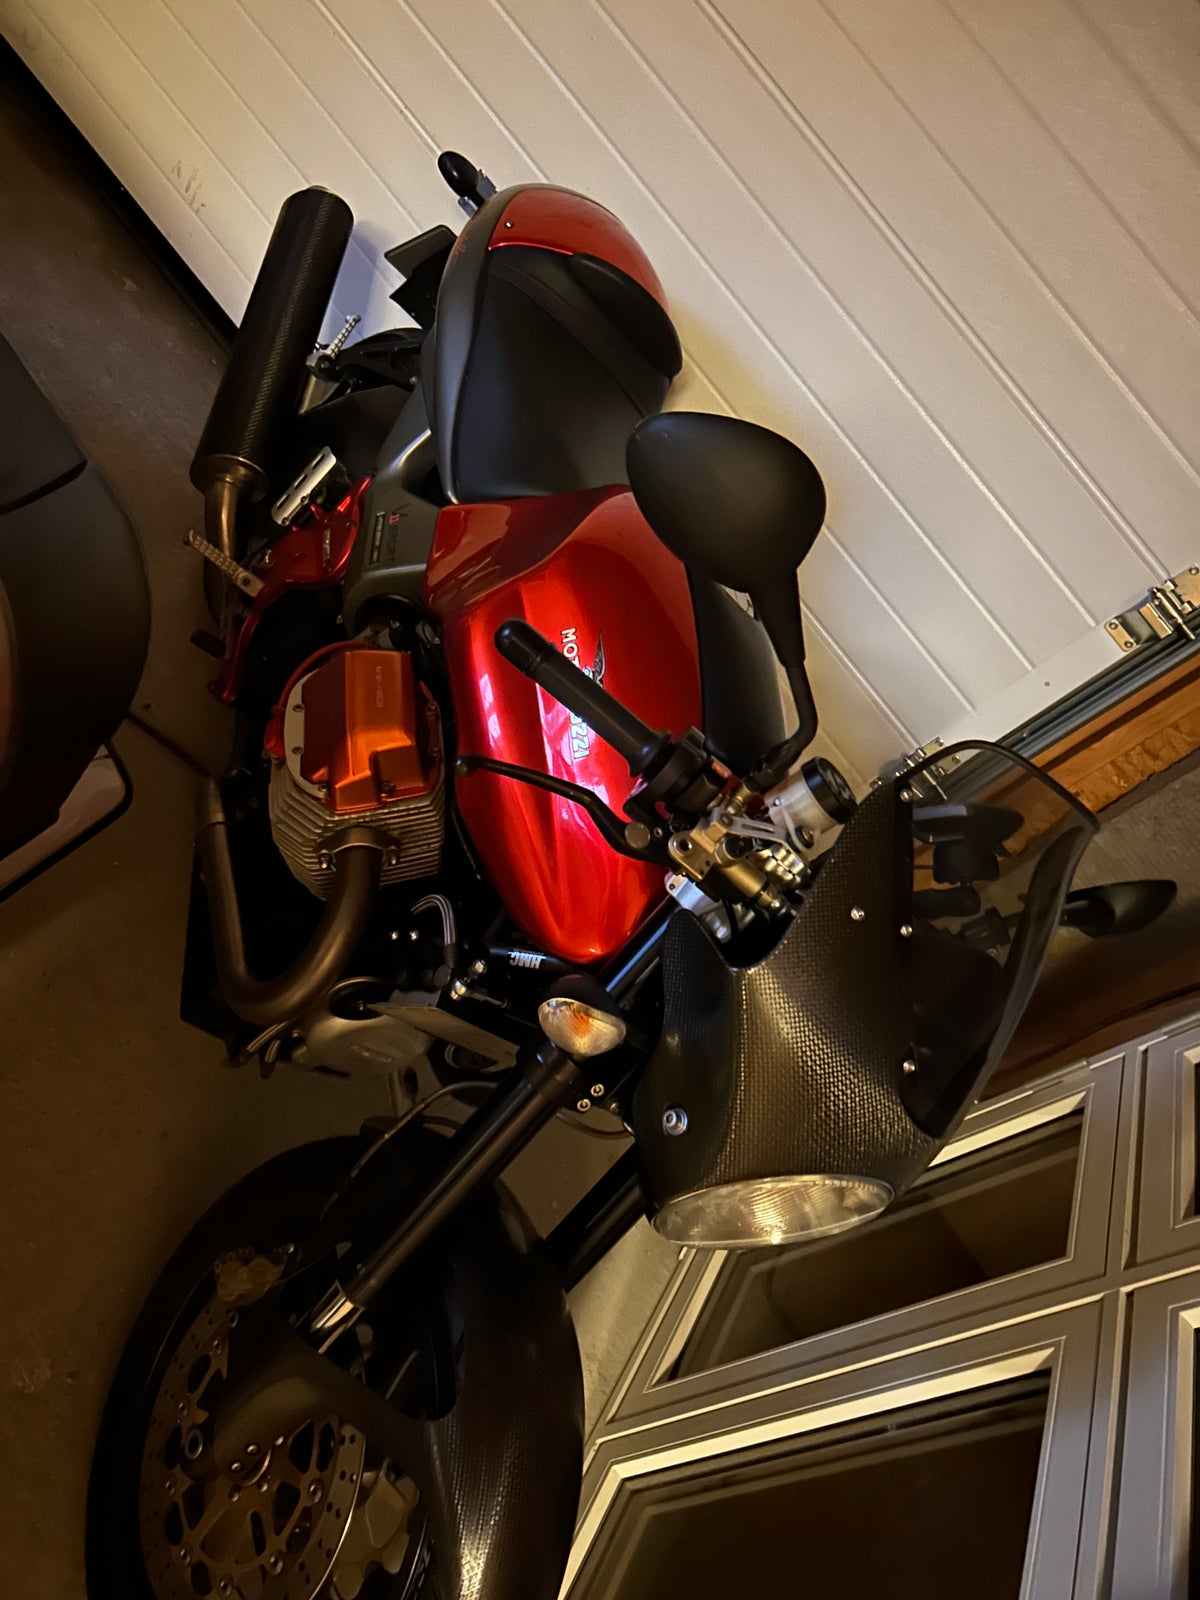 Moto Guzzi, V11 sport Rosso Mandello, 1100 ccm